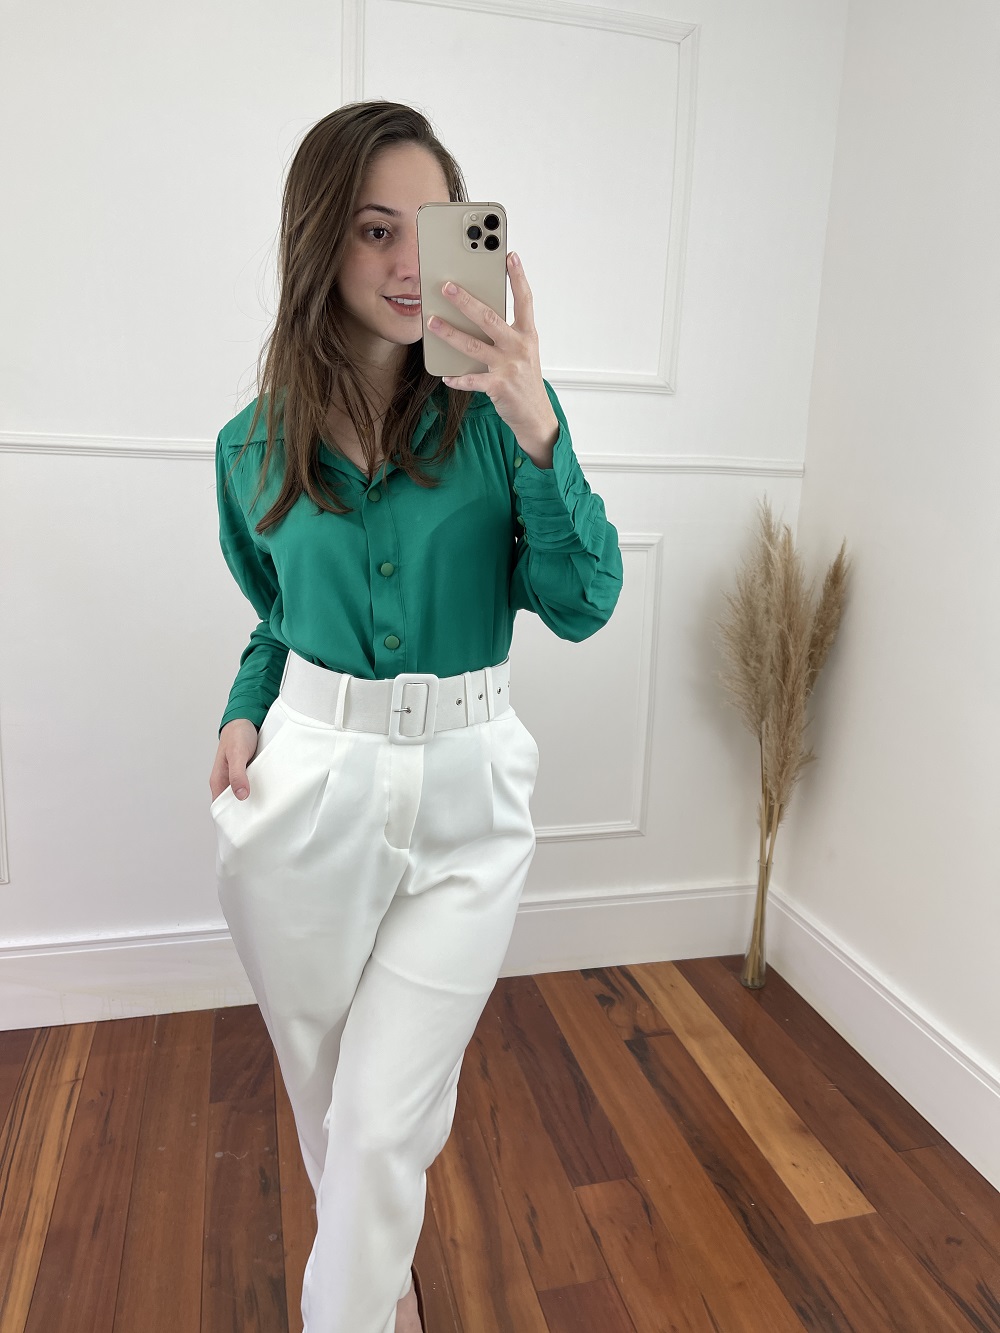 Look Pronto: Camisa Manga Longa Viscose Botões Punho Verde + Calça Cenoura Cinto Encapado Branca